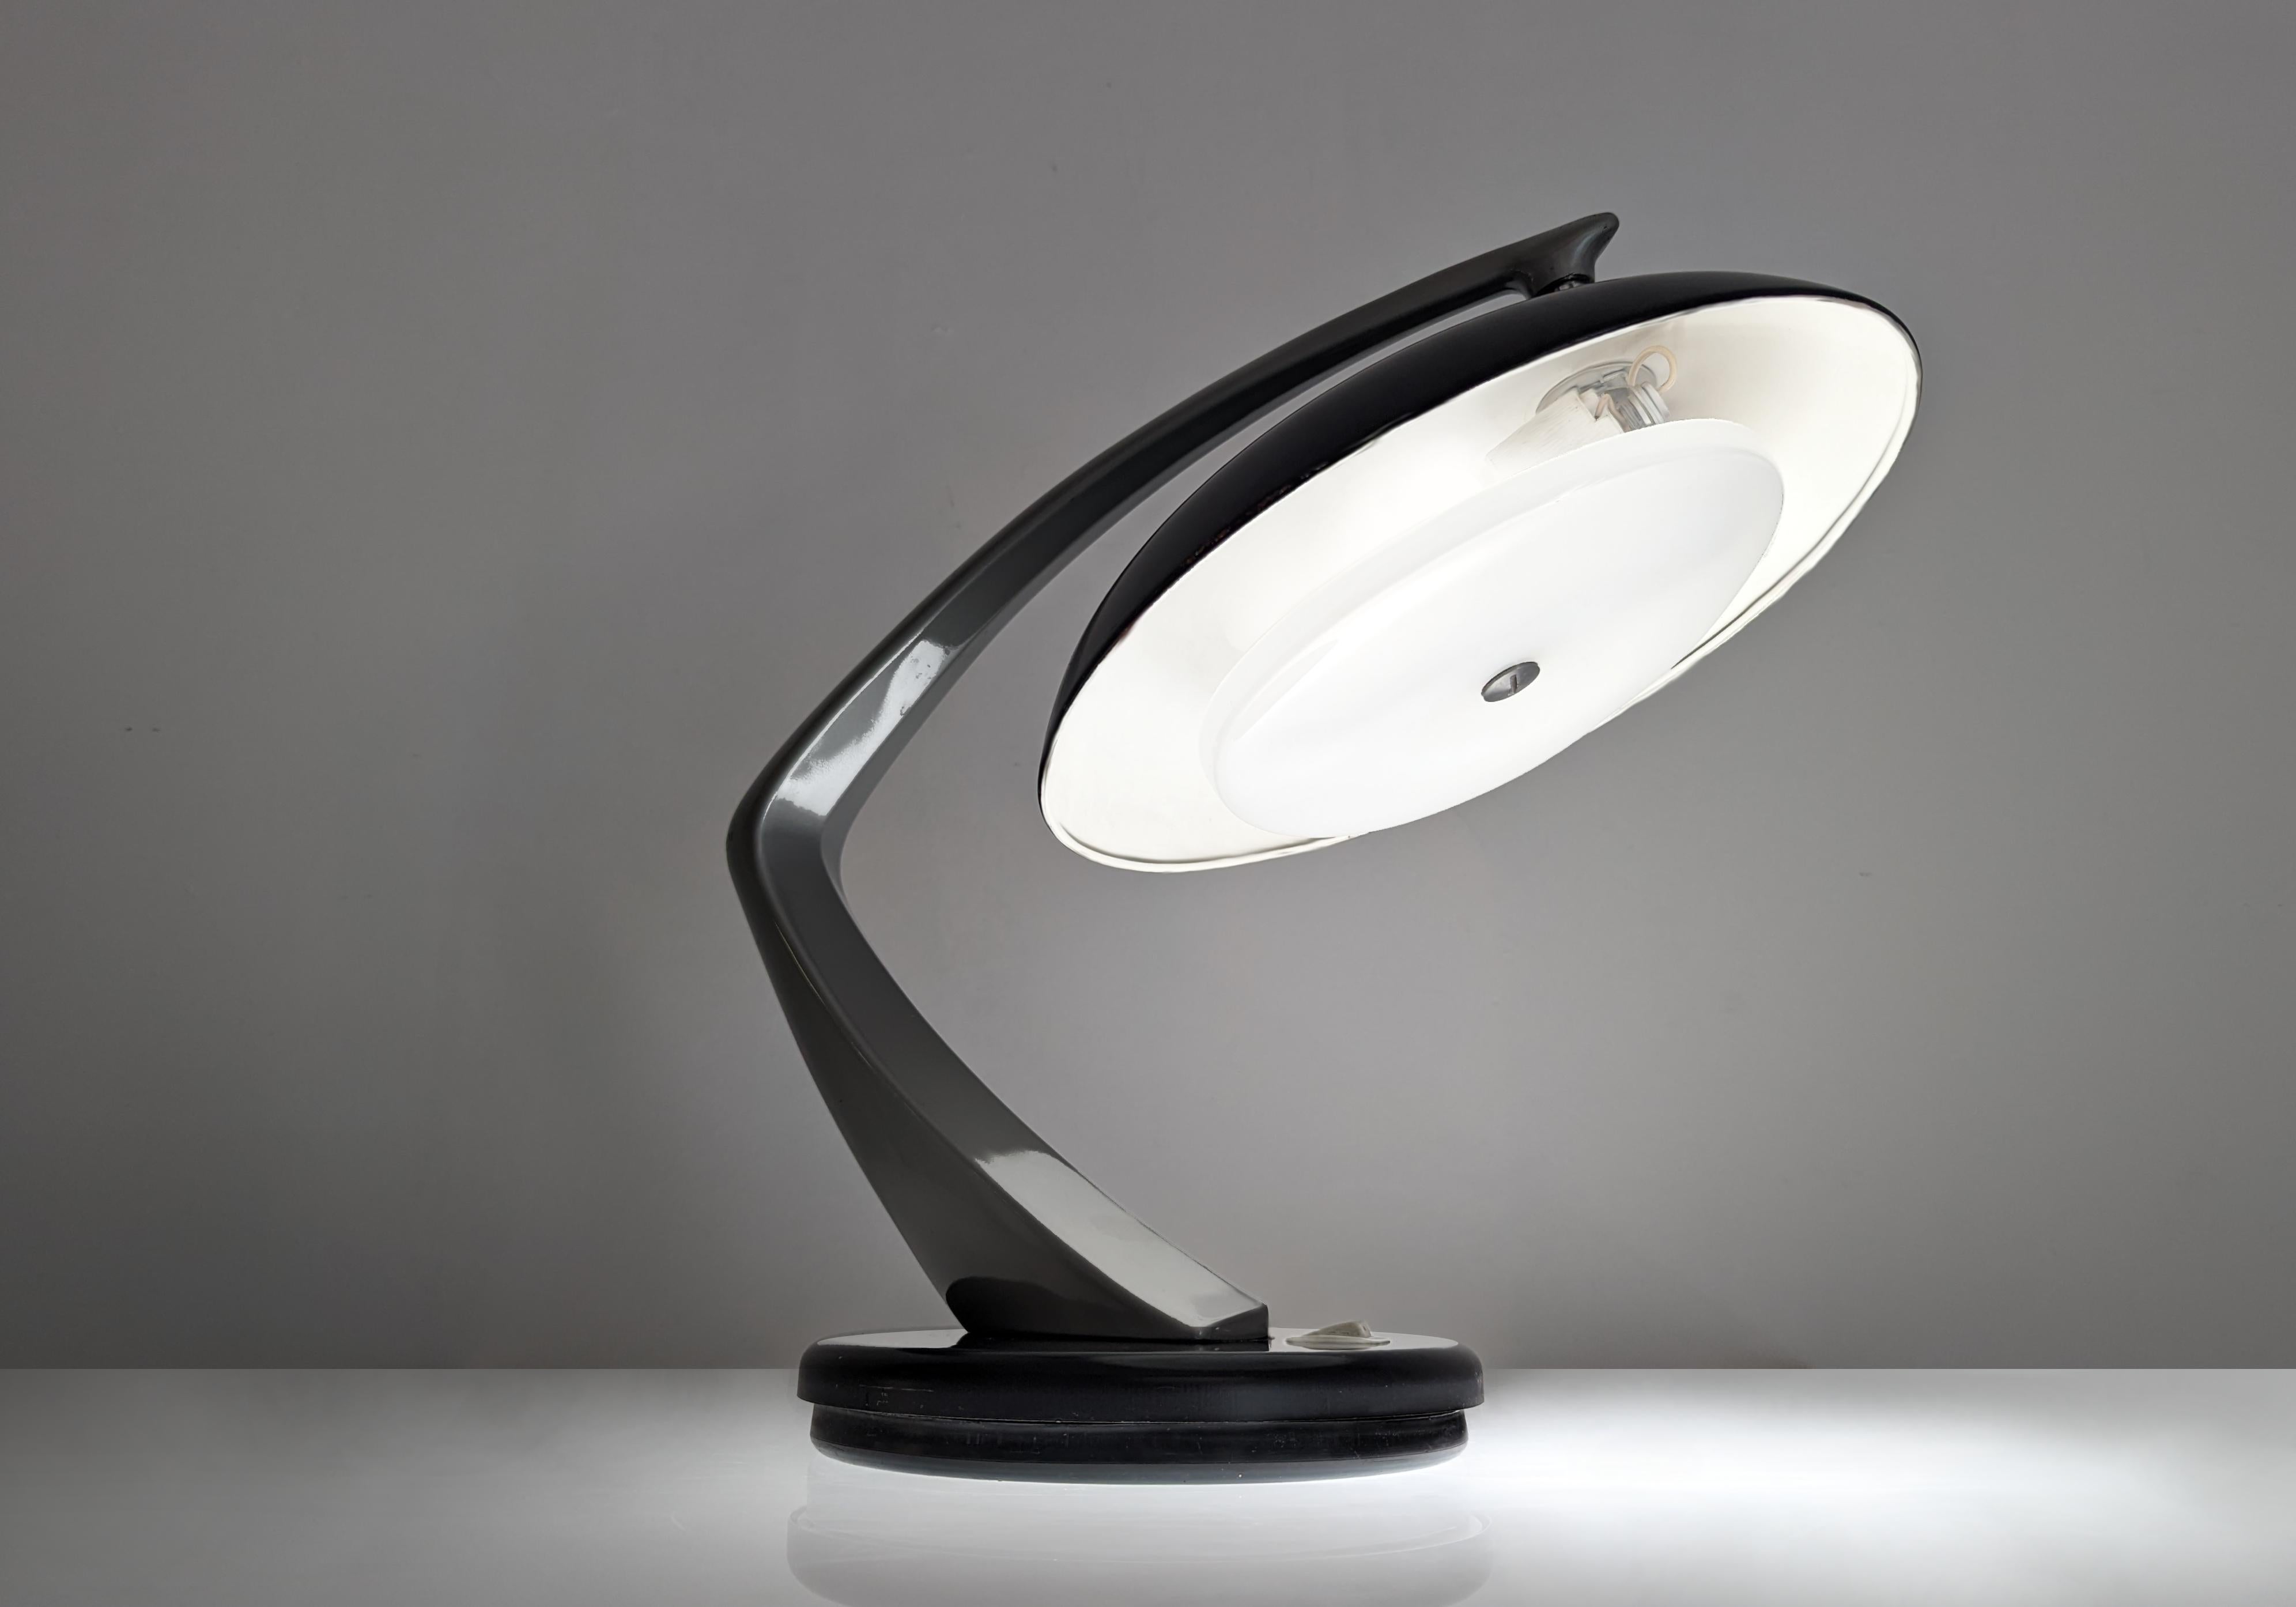 Fantastique lampe Boomerang 64 produite par FASE et conçue par Luis Pérez de la Oliva et Pedro Martín García en 1964, modèle élégant en noir et gris, avec un abat-jour orientable qui nous permet de jouer avec différentes positions et éclairages.